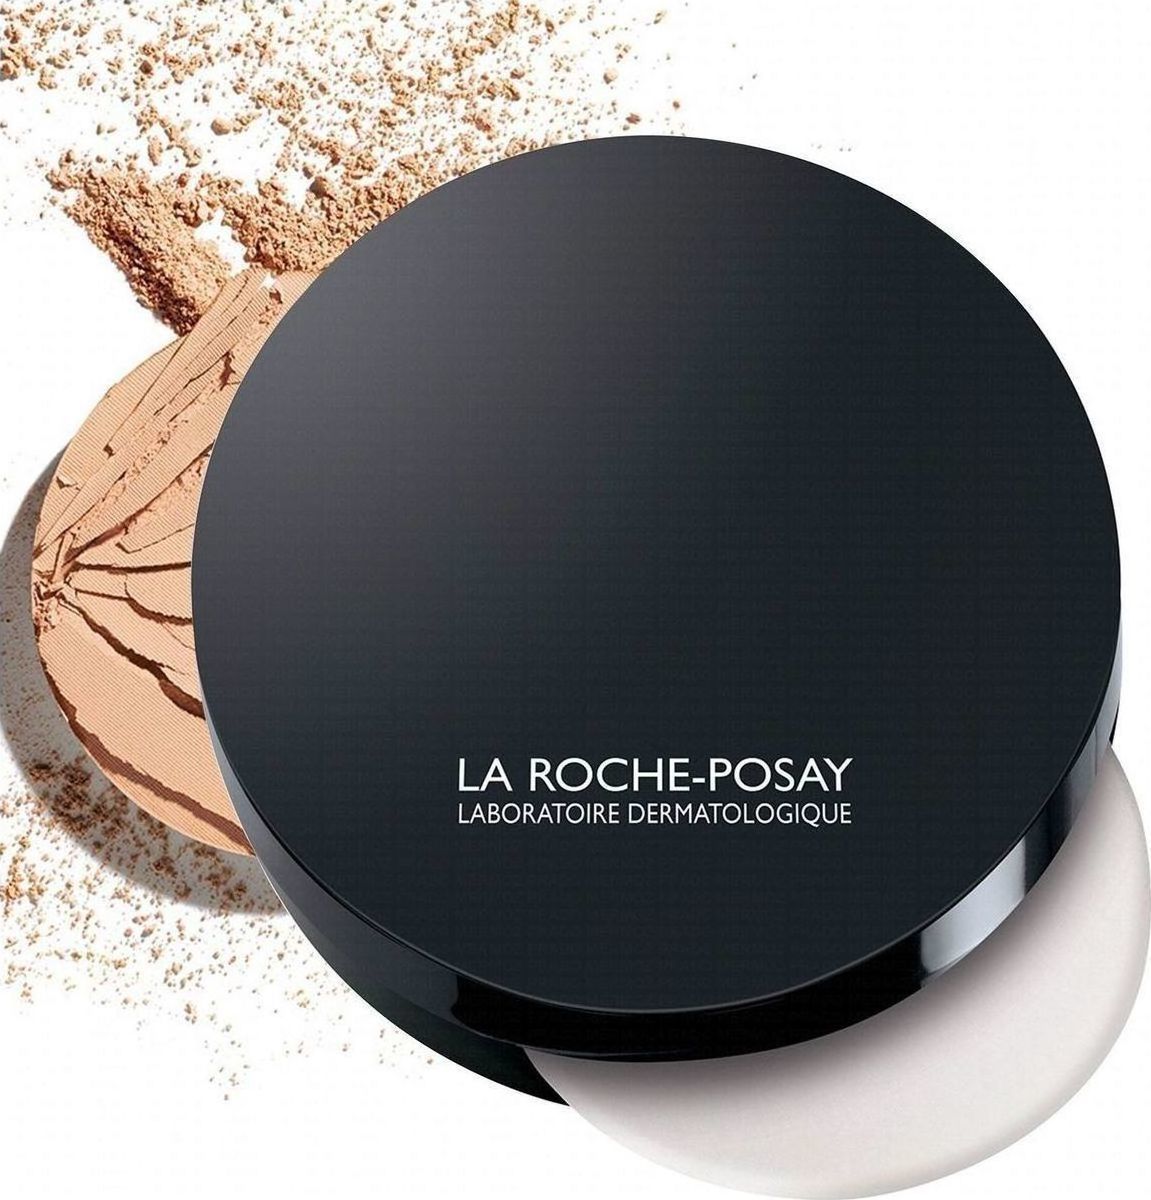 La Roche-Possay Corrective Compact Powder Mineral Foundation 9.5 g